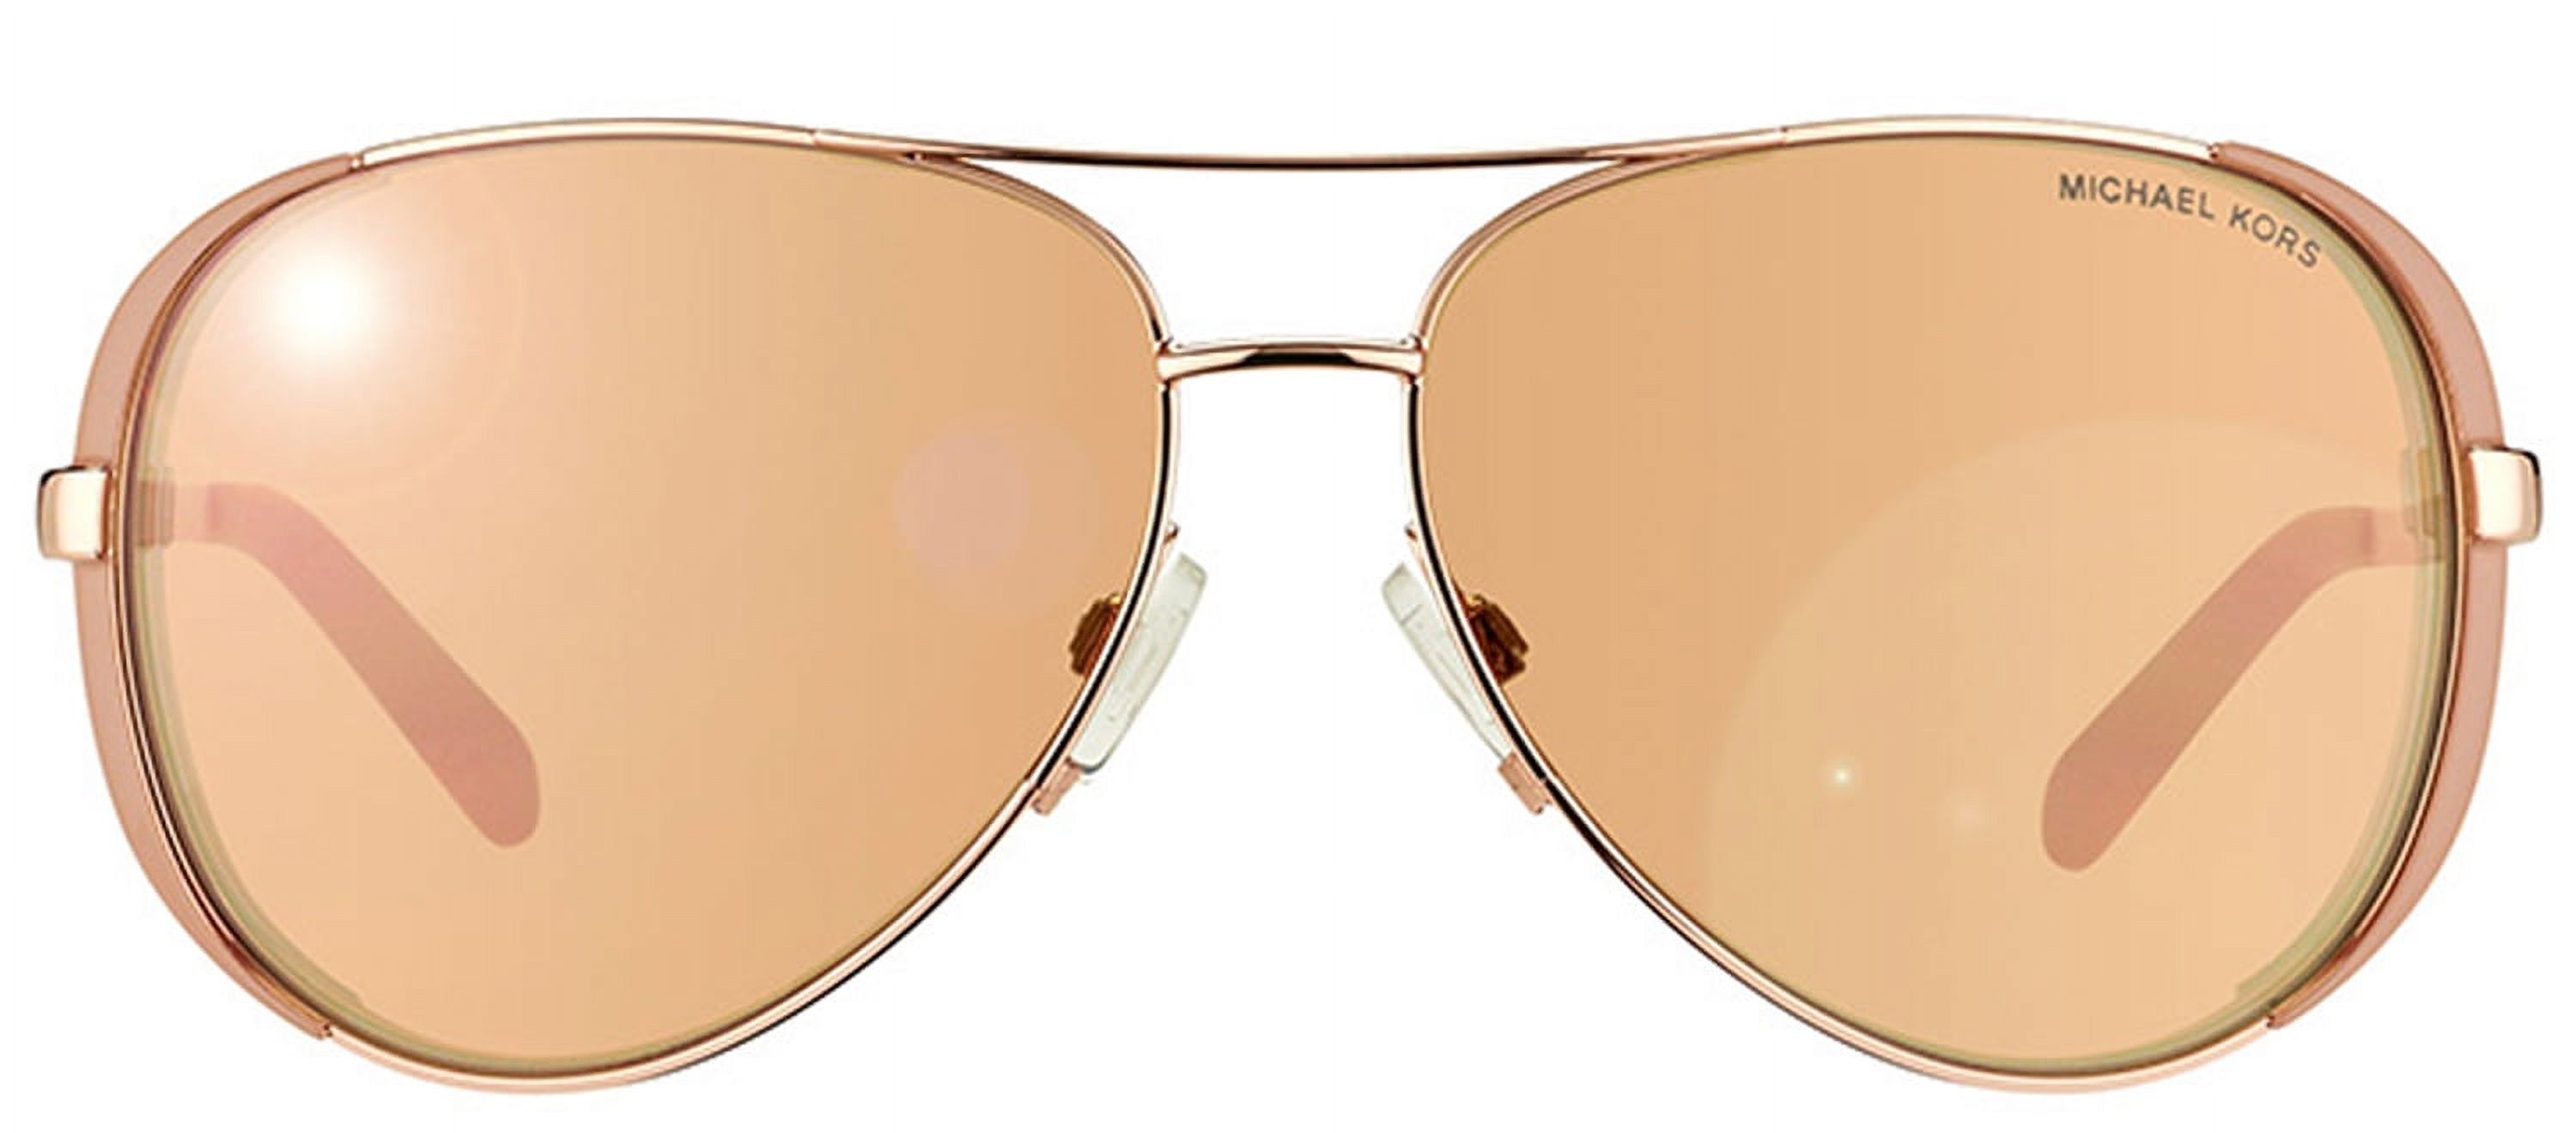 Women's Chelsea MK5004-1017R1-59 Rose Gold Aviator Sunglasses - image 2 of 3